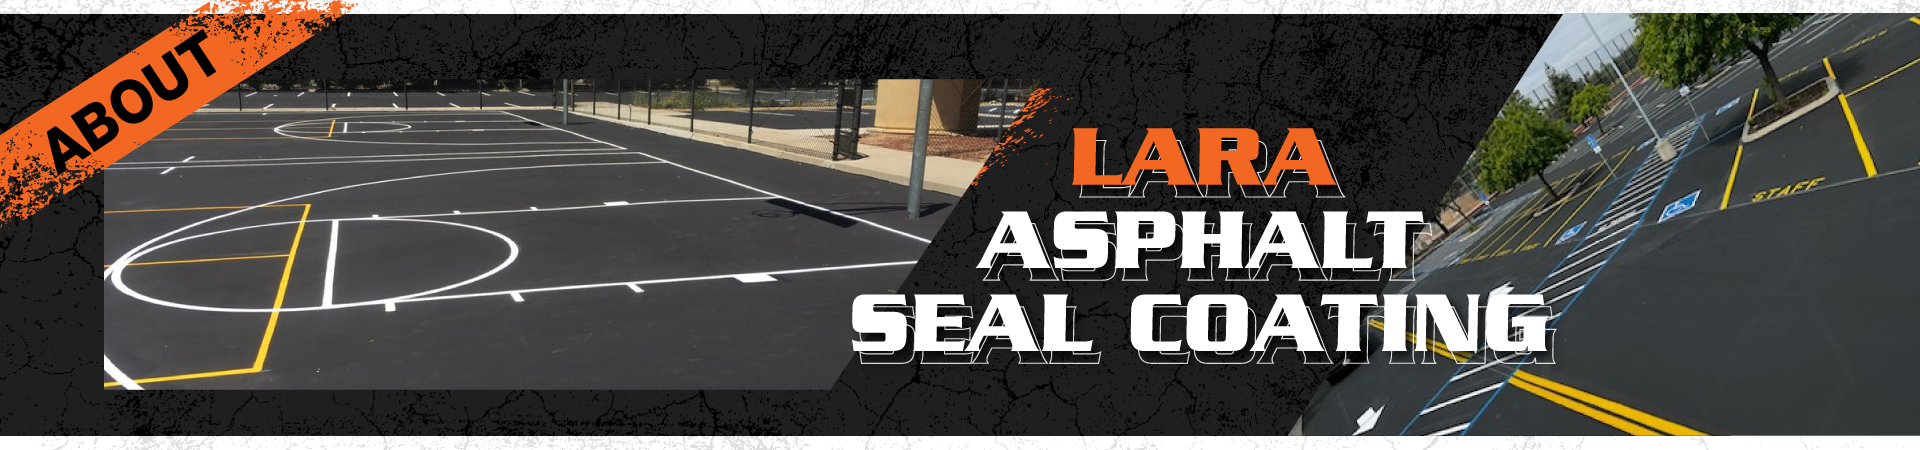 About - Lara Asphalt Seal Coating